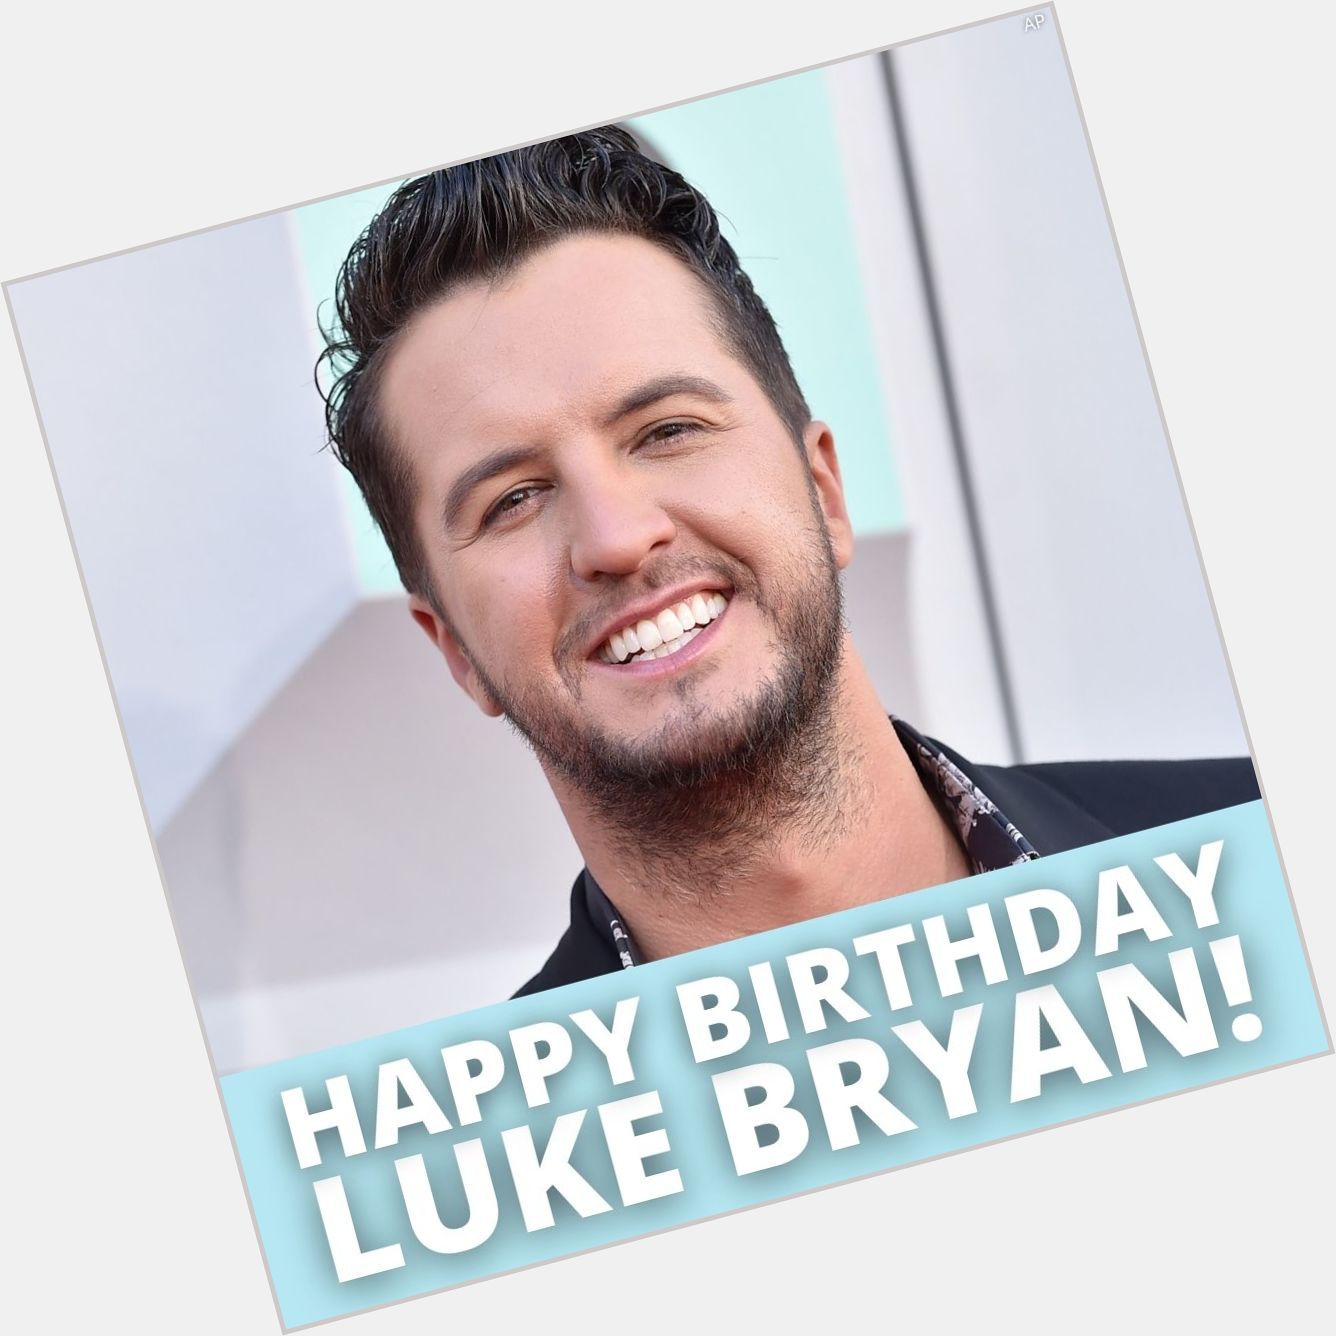 HAPPY BIRTHDAY! Luke Bryan turns 45 today. 